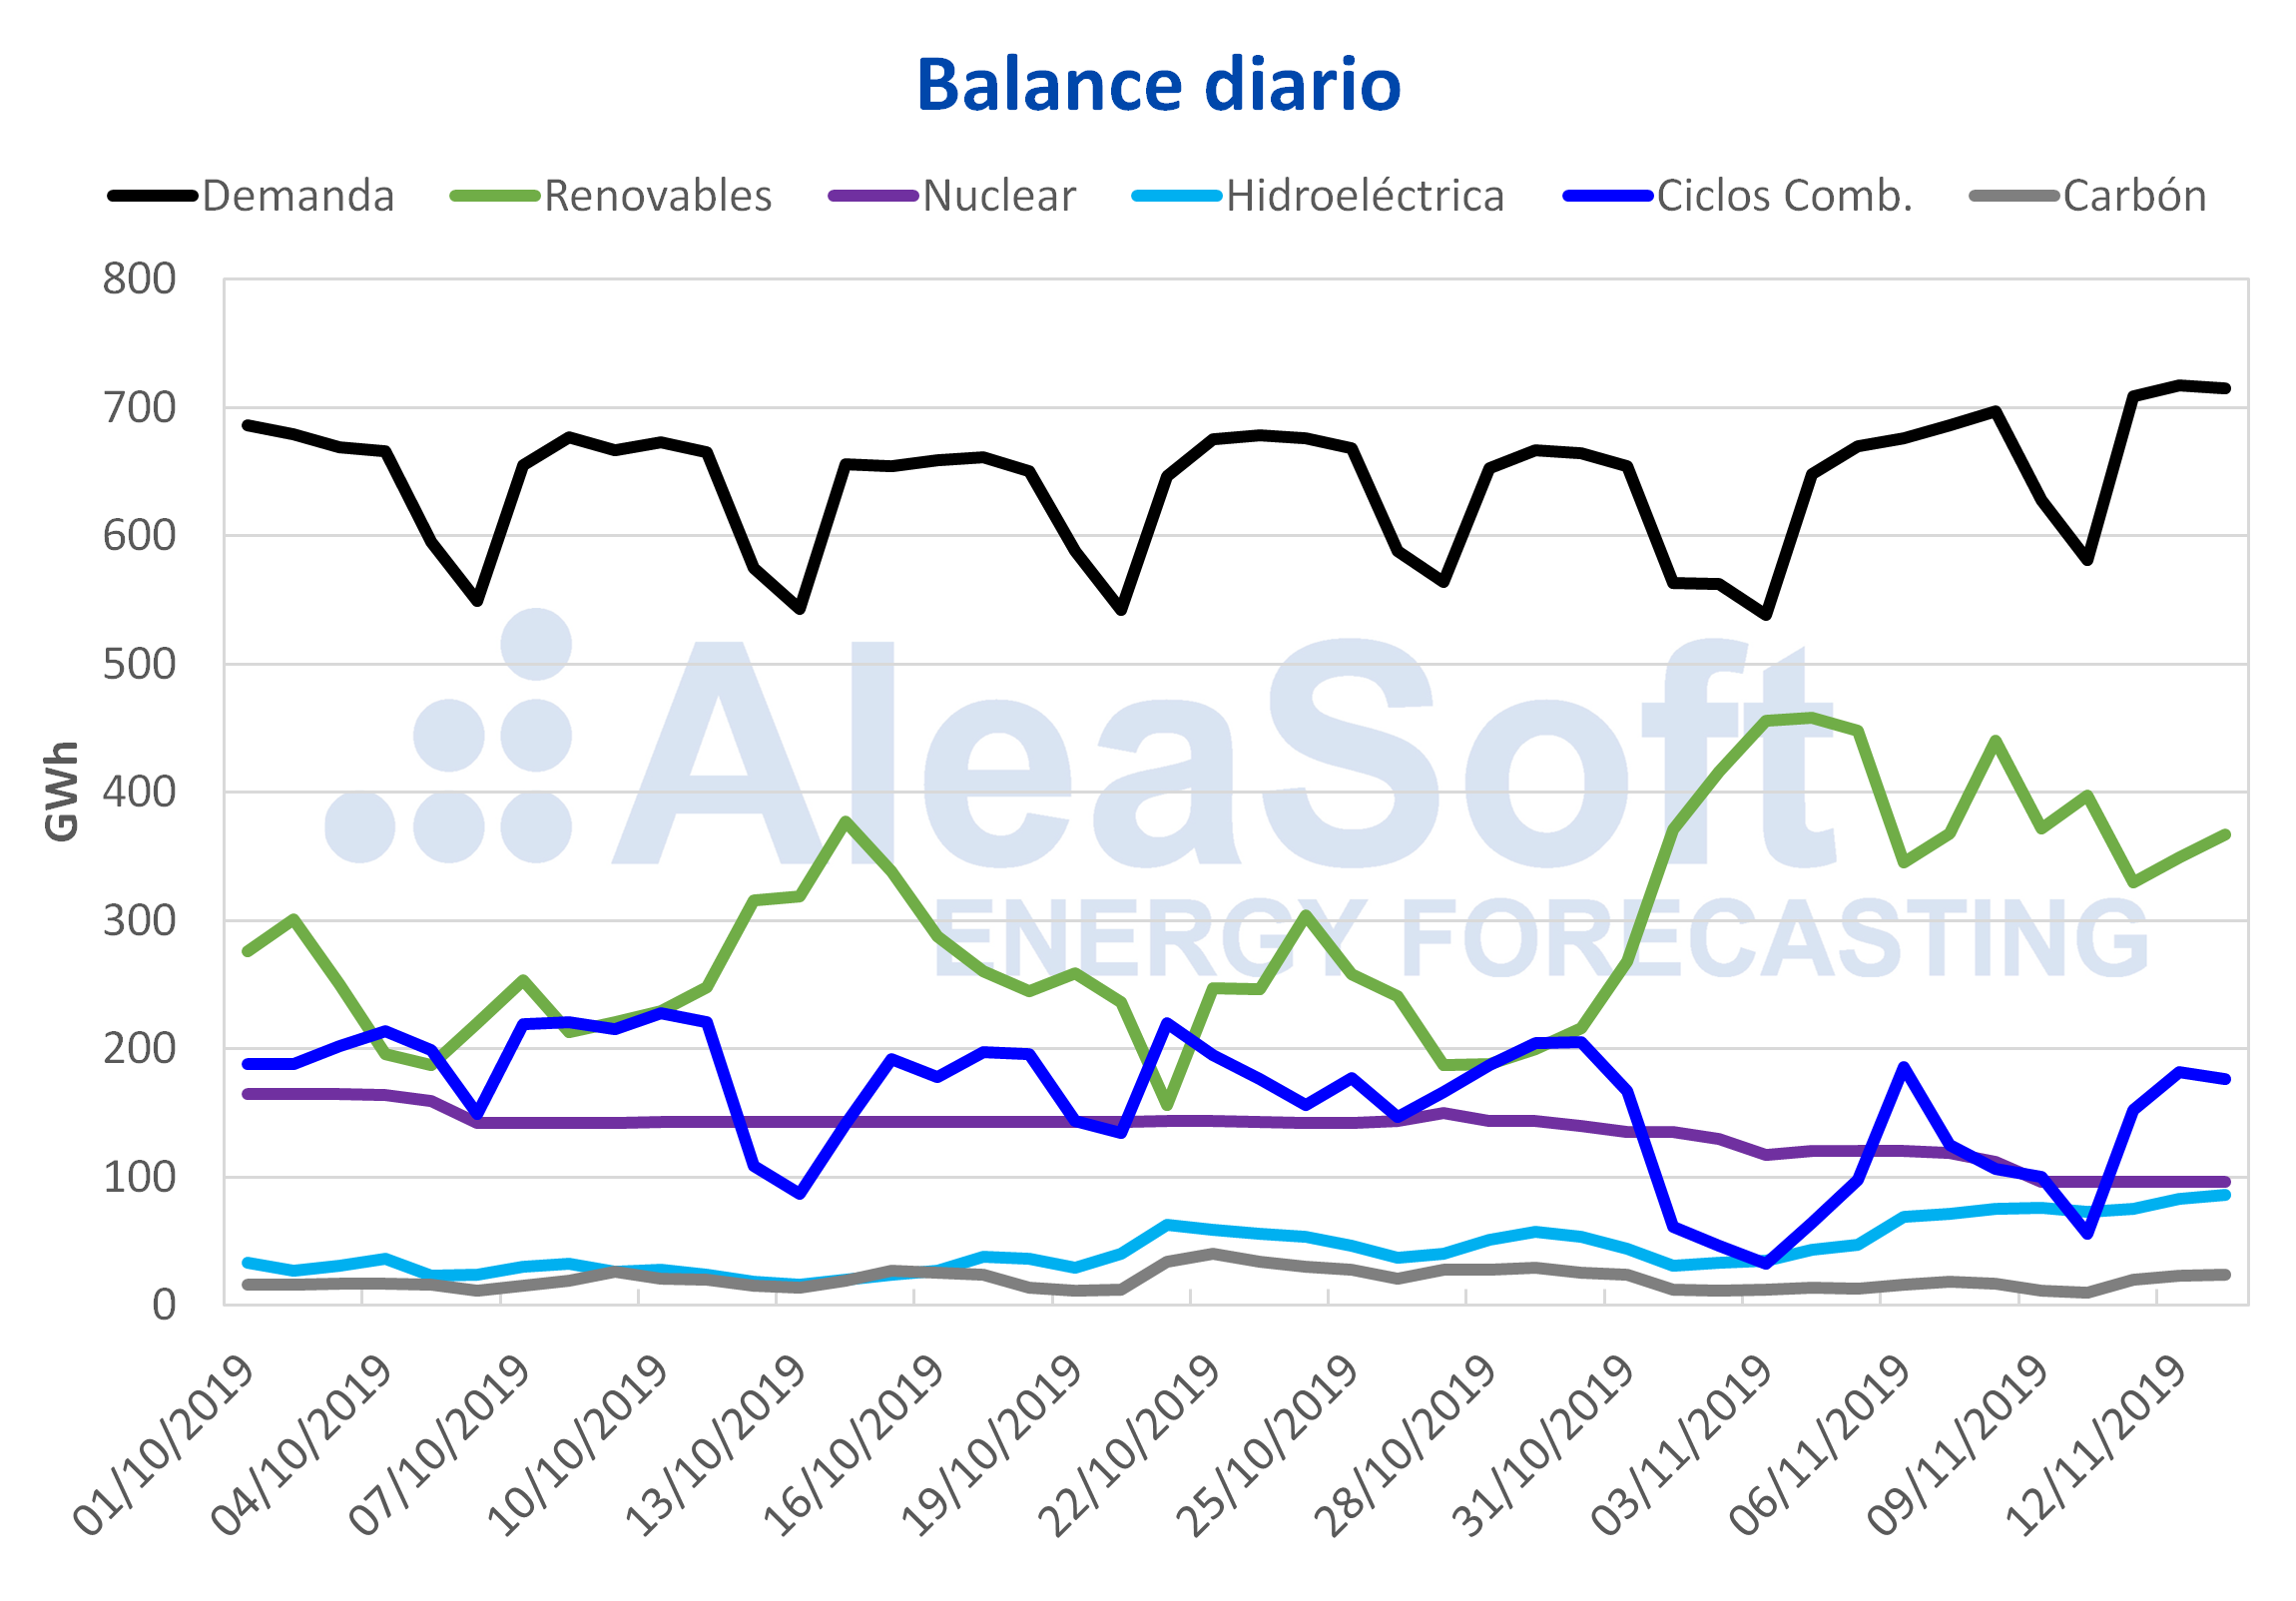 AleaSoft - Balance diario electricidad España demanda producción